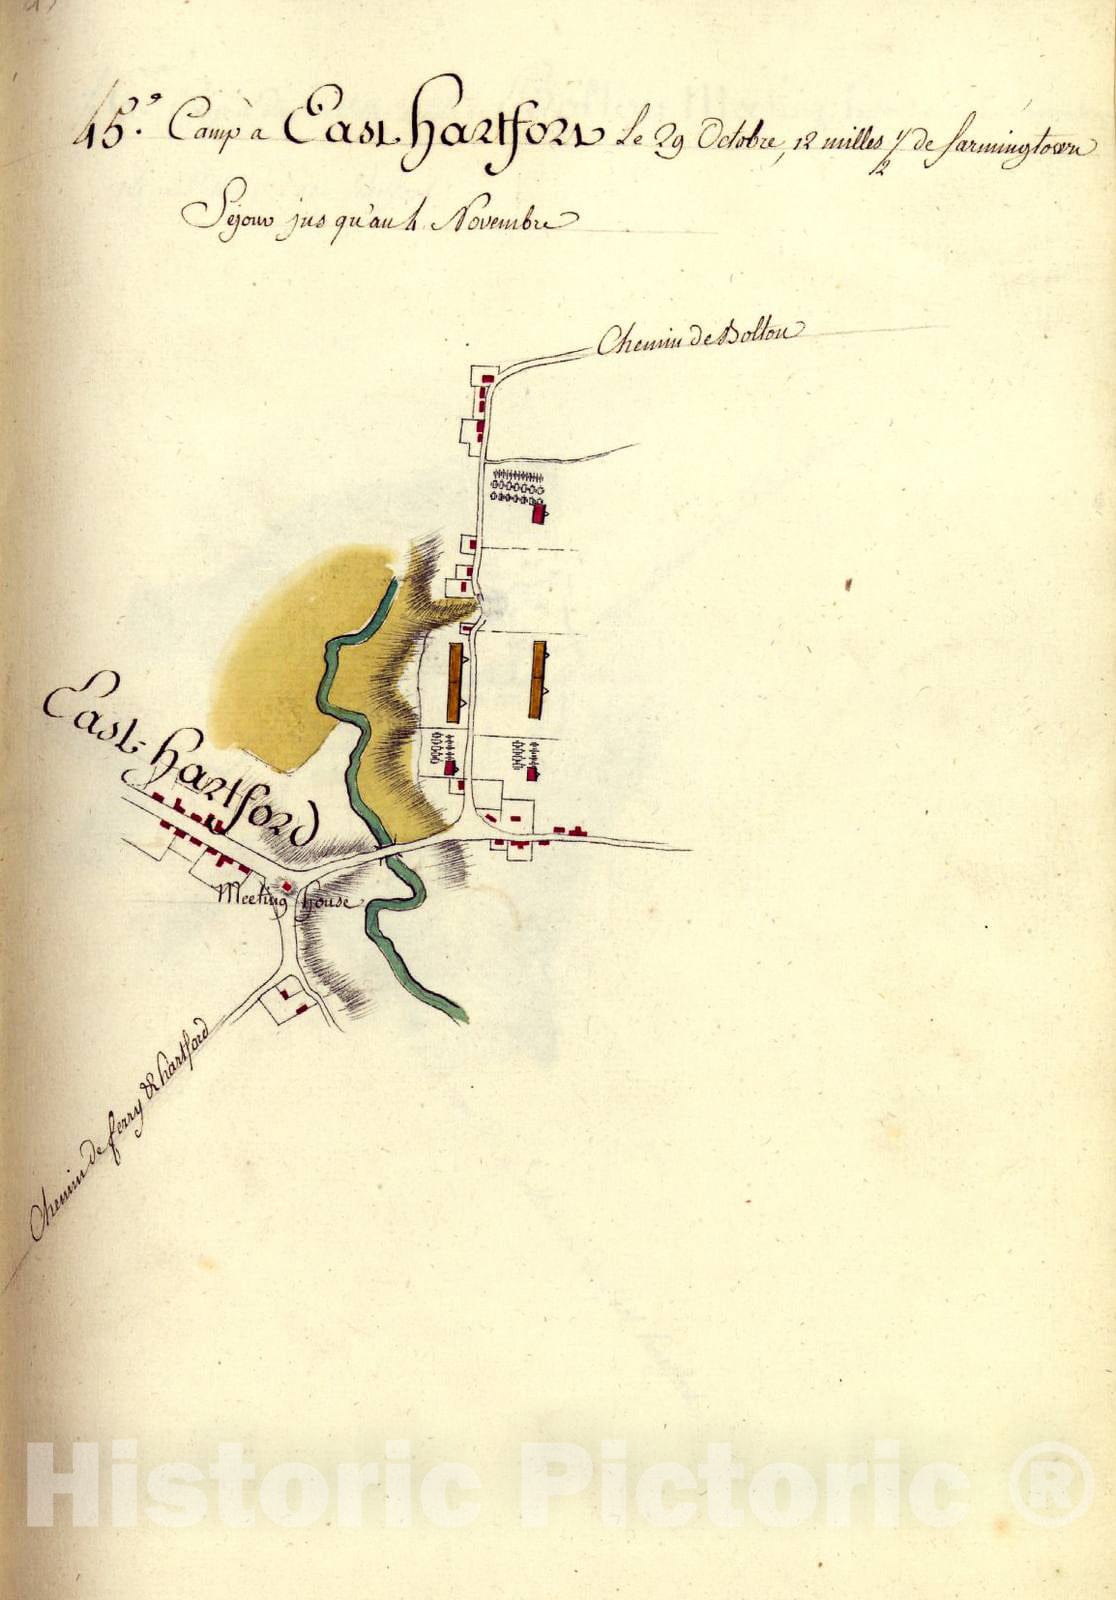 Historic 1782 Map - AmÃ©rique campagne. - Camp a East Hartford